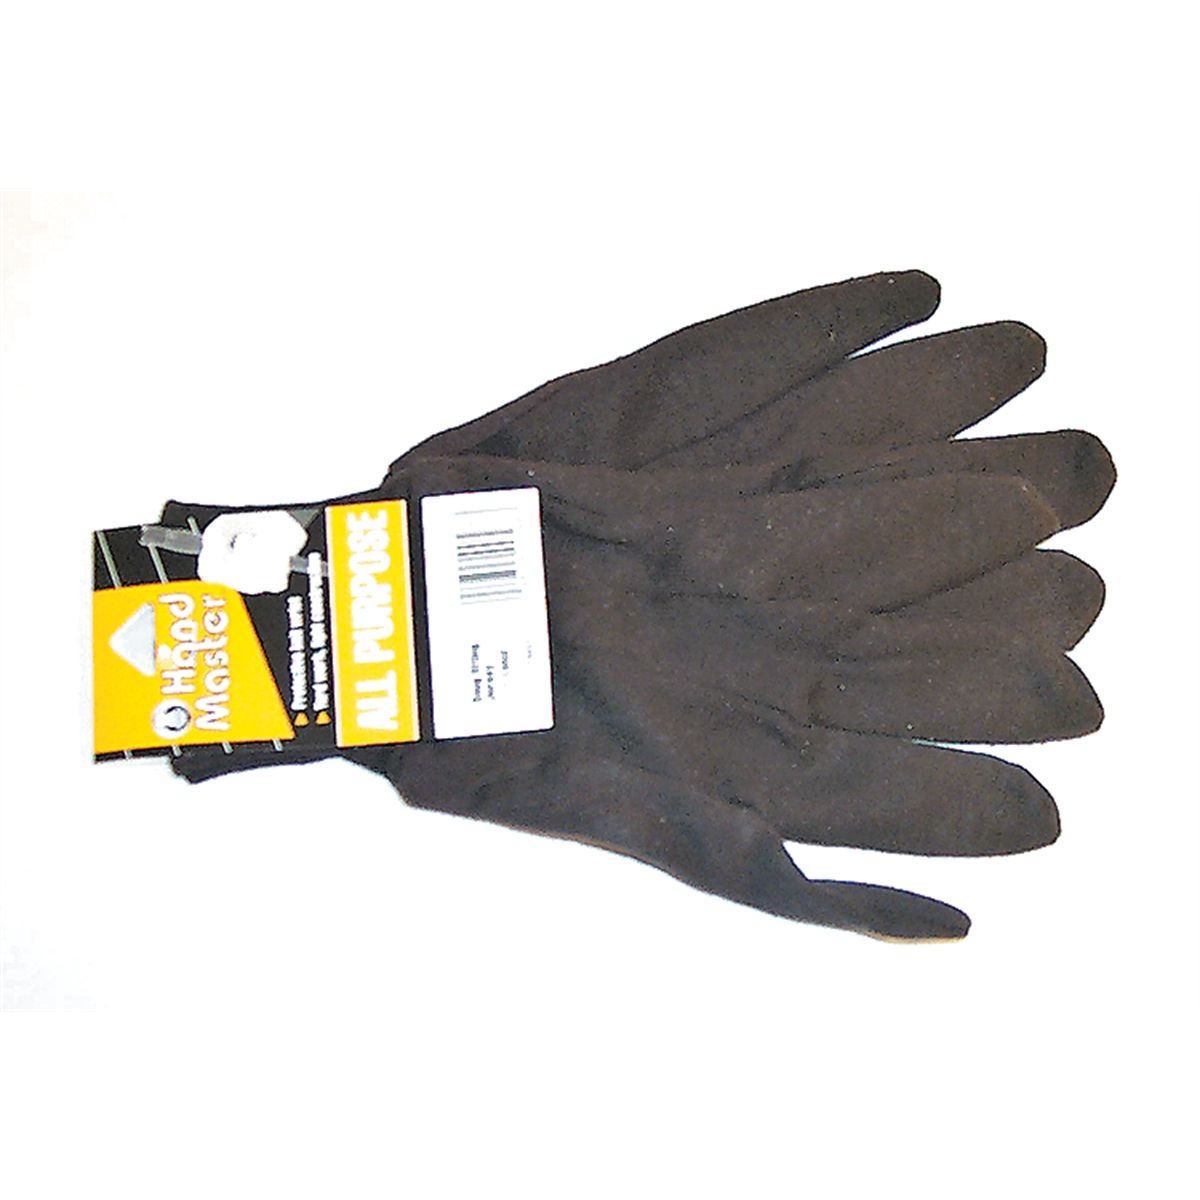 Brown Cotton Jersey Gloves